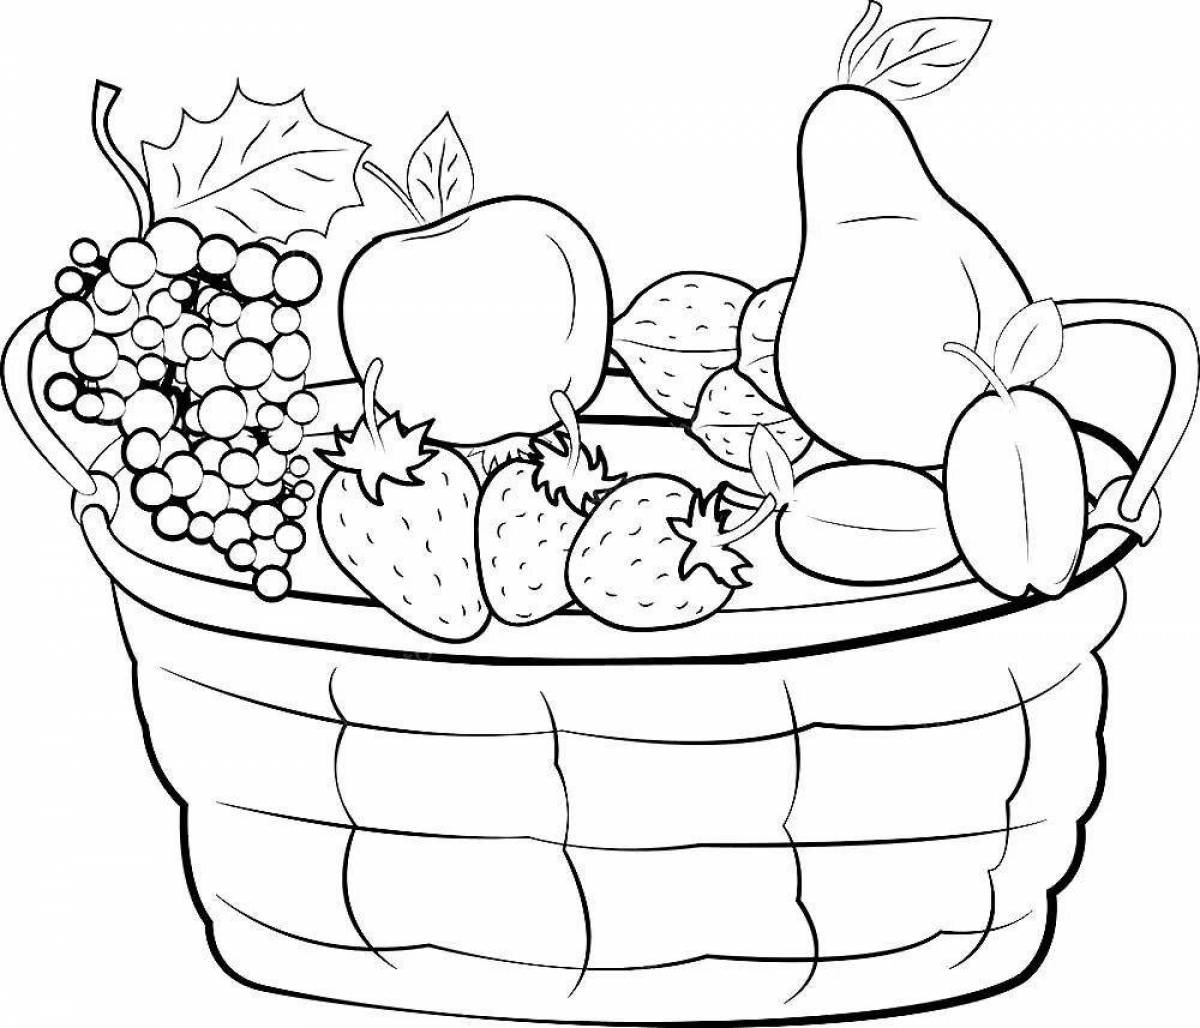 Яркая корзина фруктов и овощей